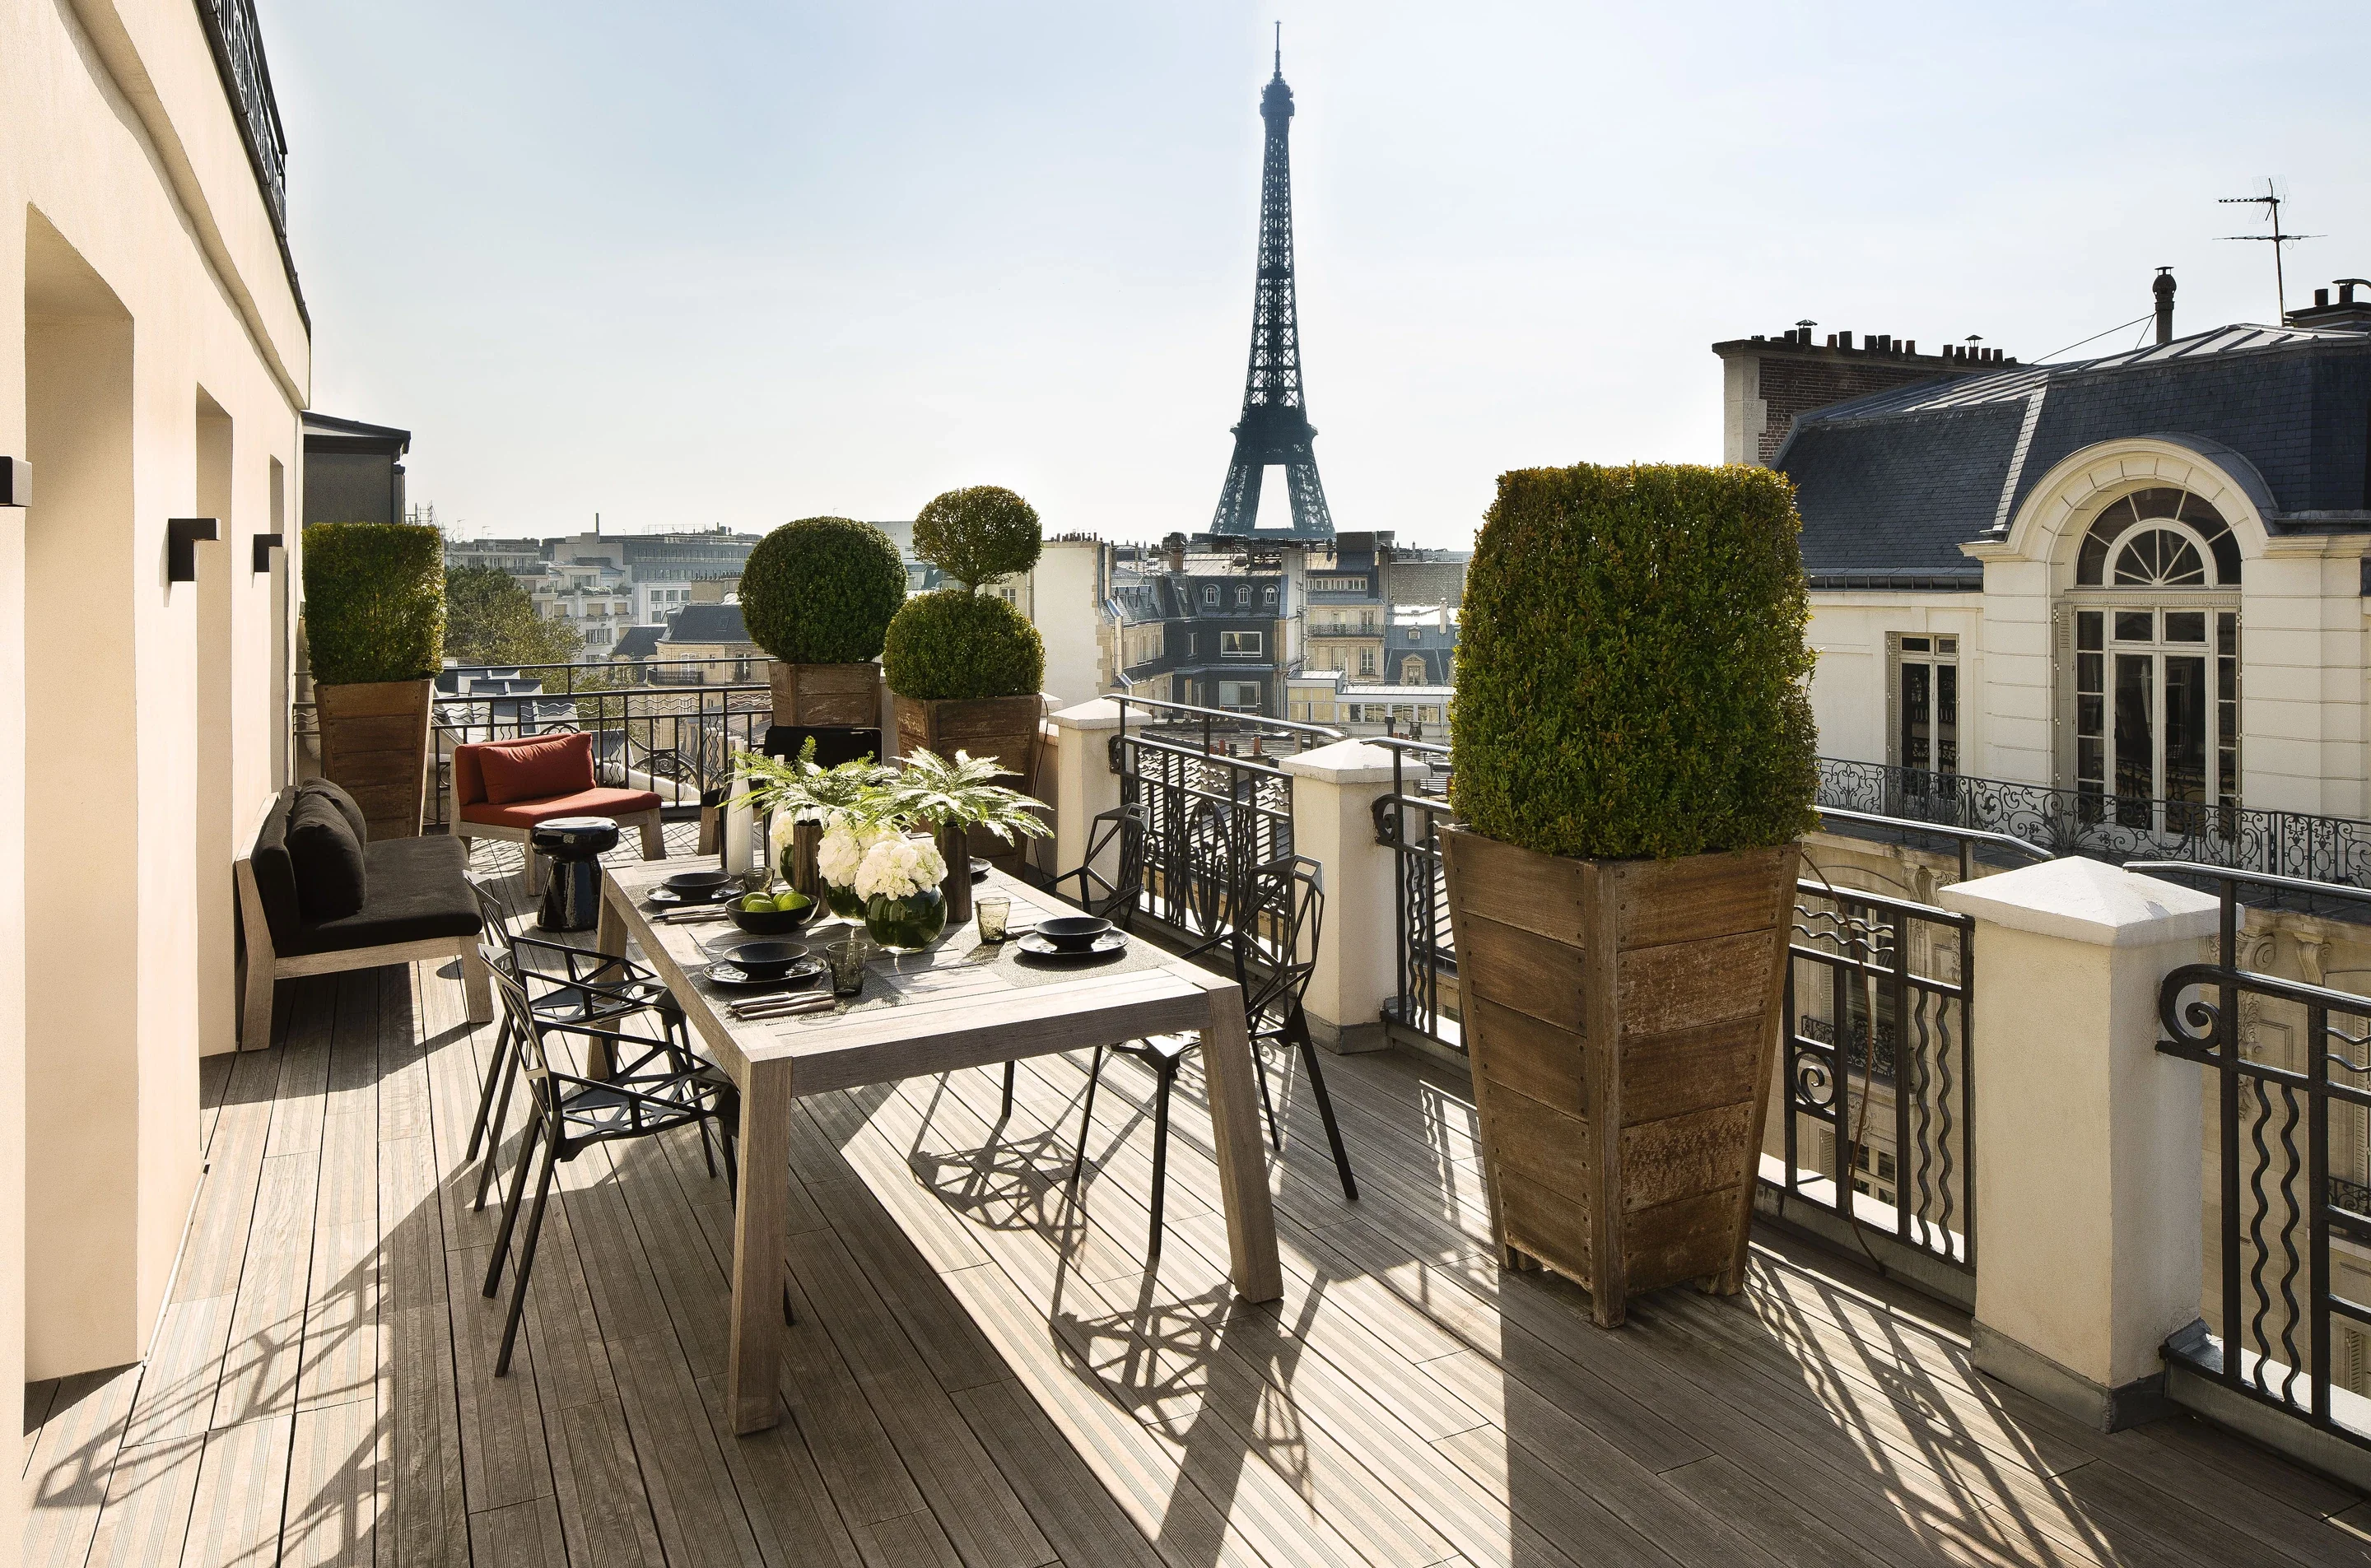 Hotel Montaigne Paris - Paris - Hotel WebSite